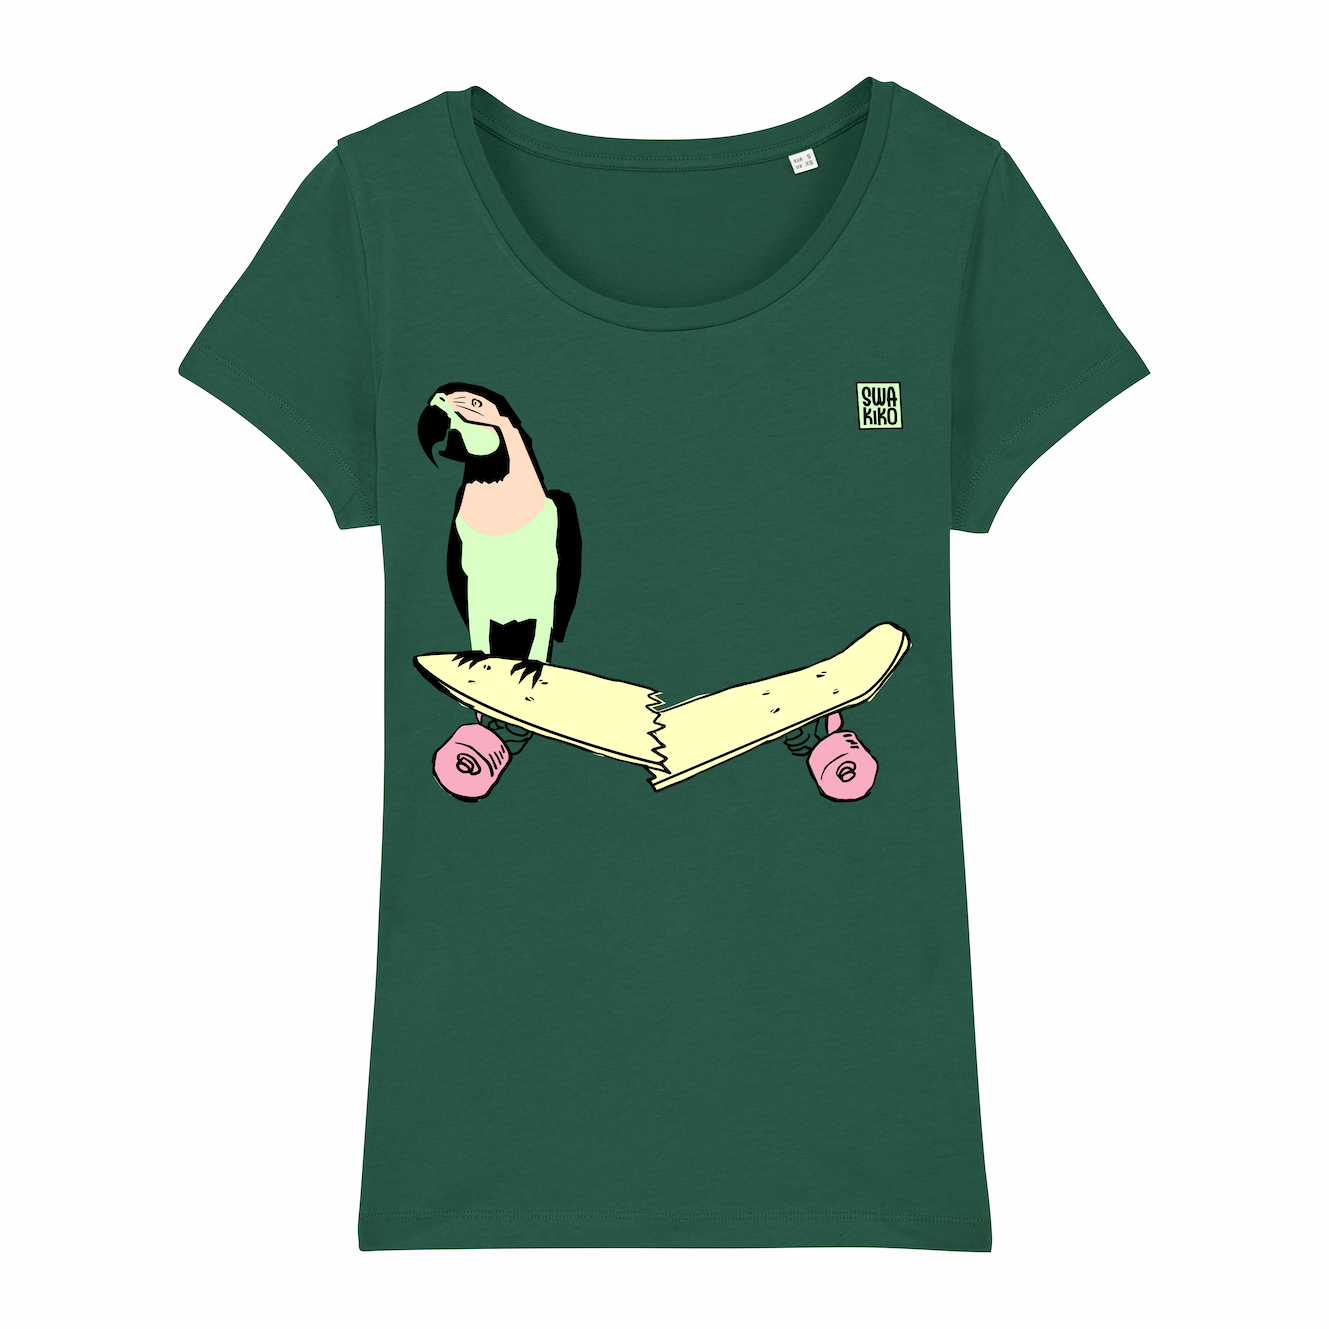 Skate T-shirt women, parrot on skateboard, green